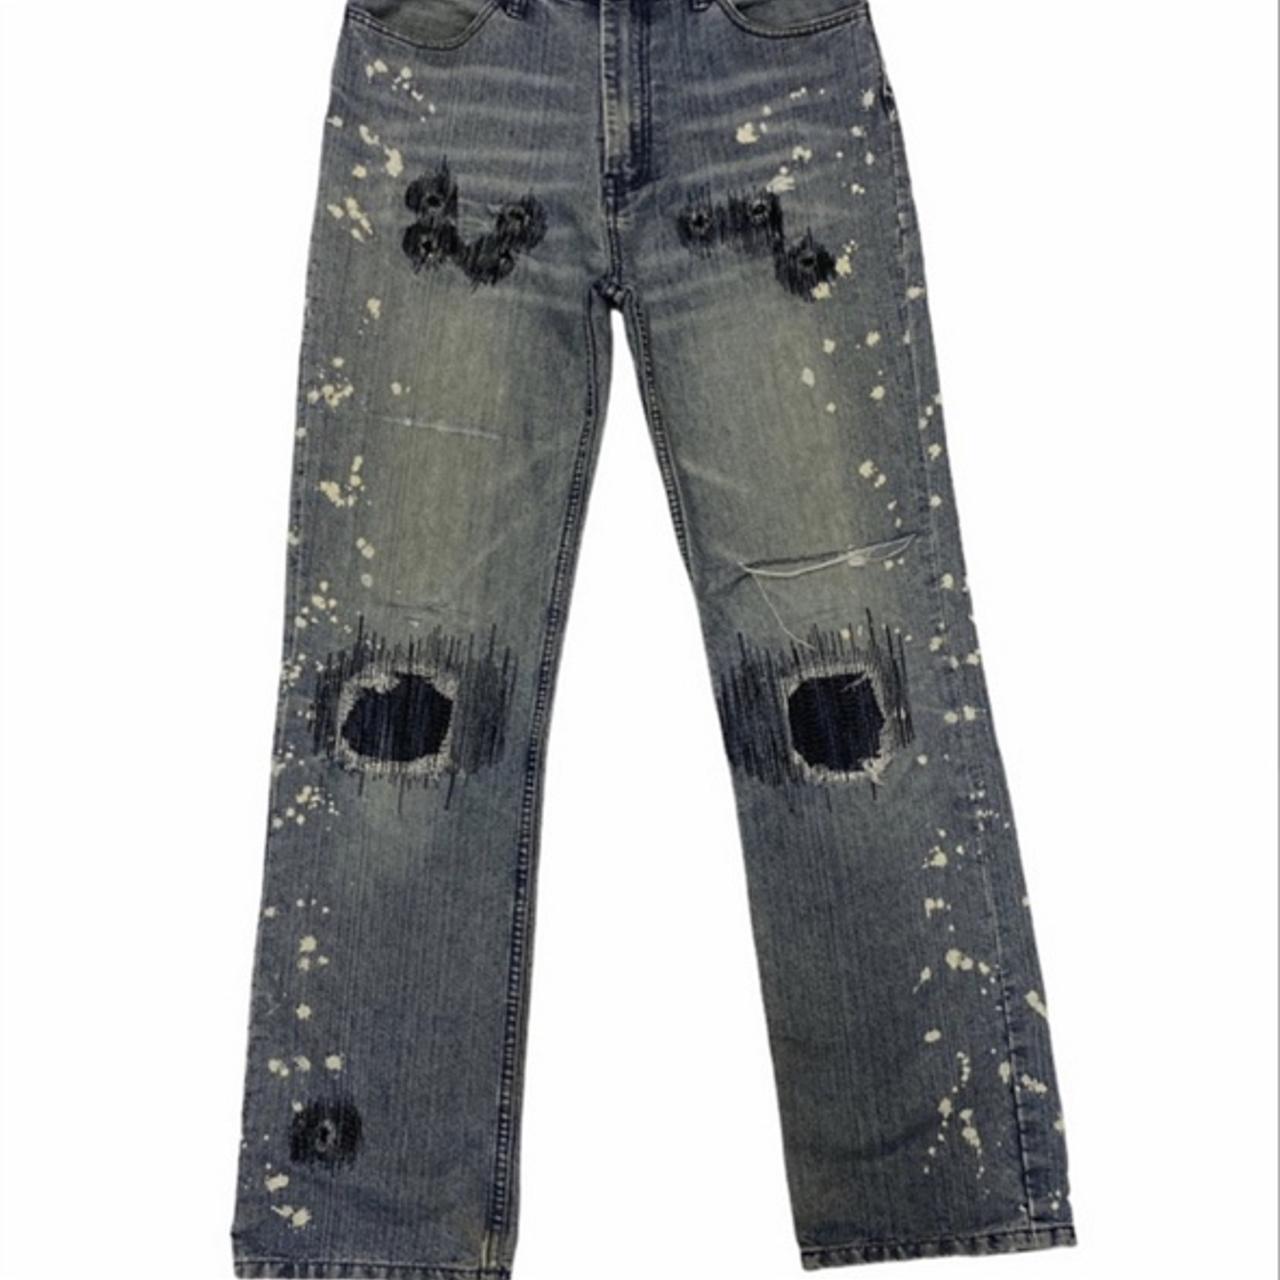 Sold sold sold sold🛑🛑🛑 Distressed Number nine jeans... - Depop